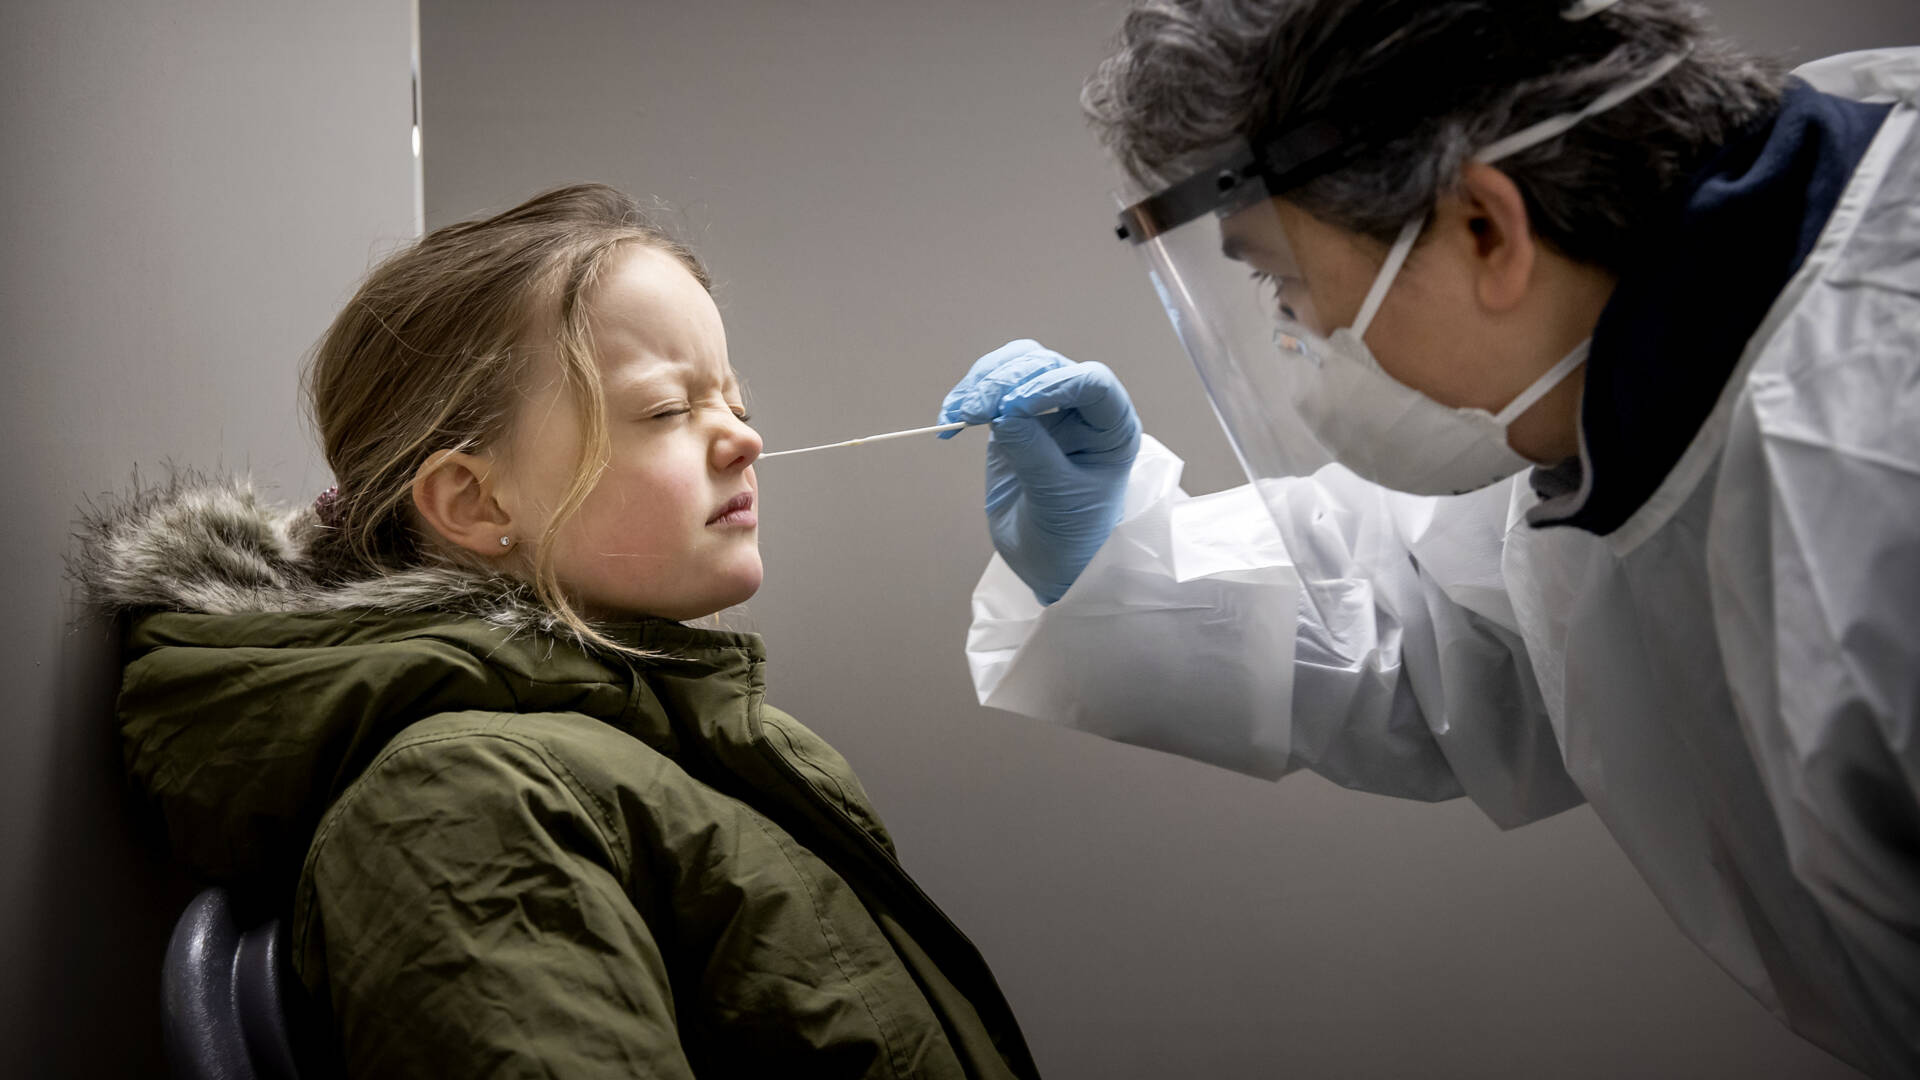 سيتوقف GGD عن استخدام اختبار الأنف العميق للأطفال